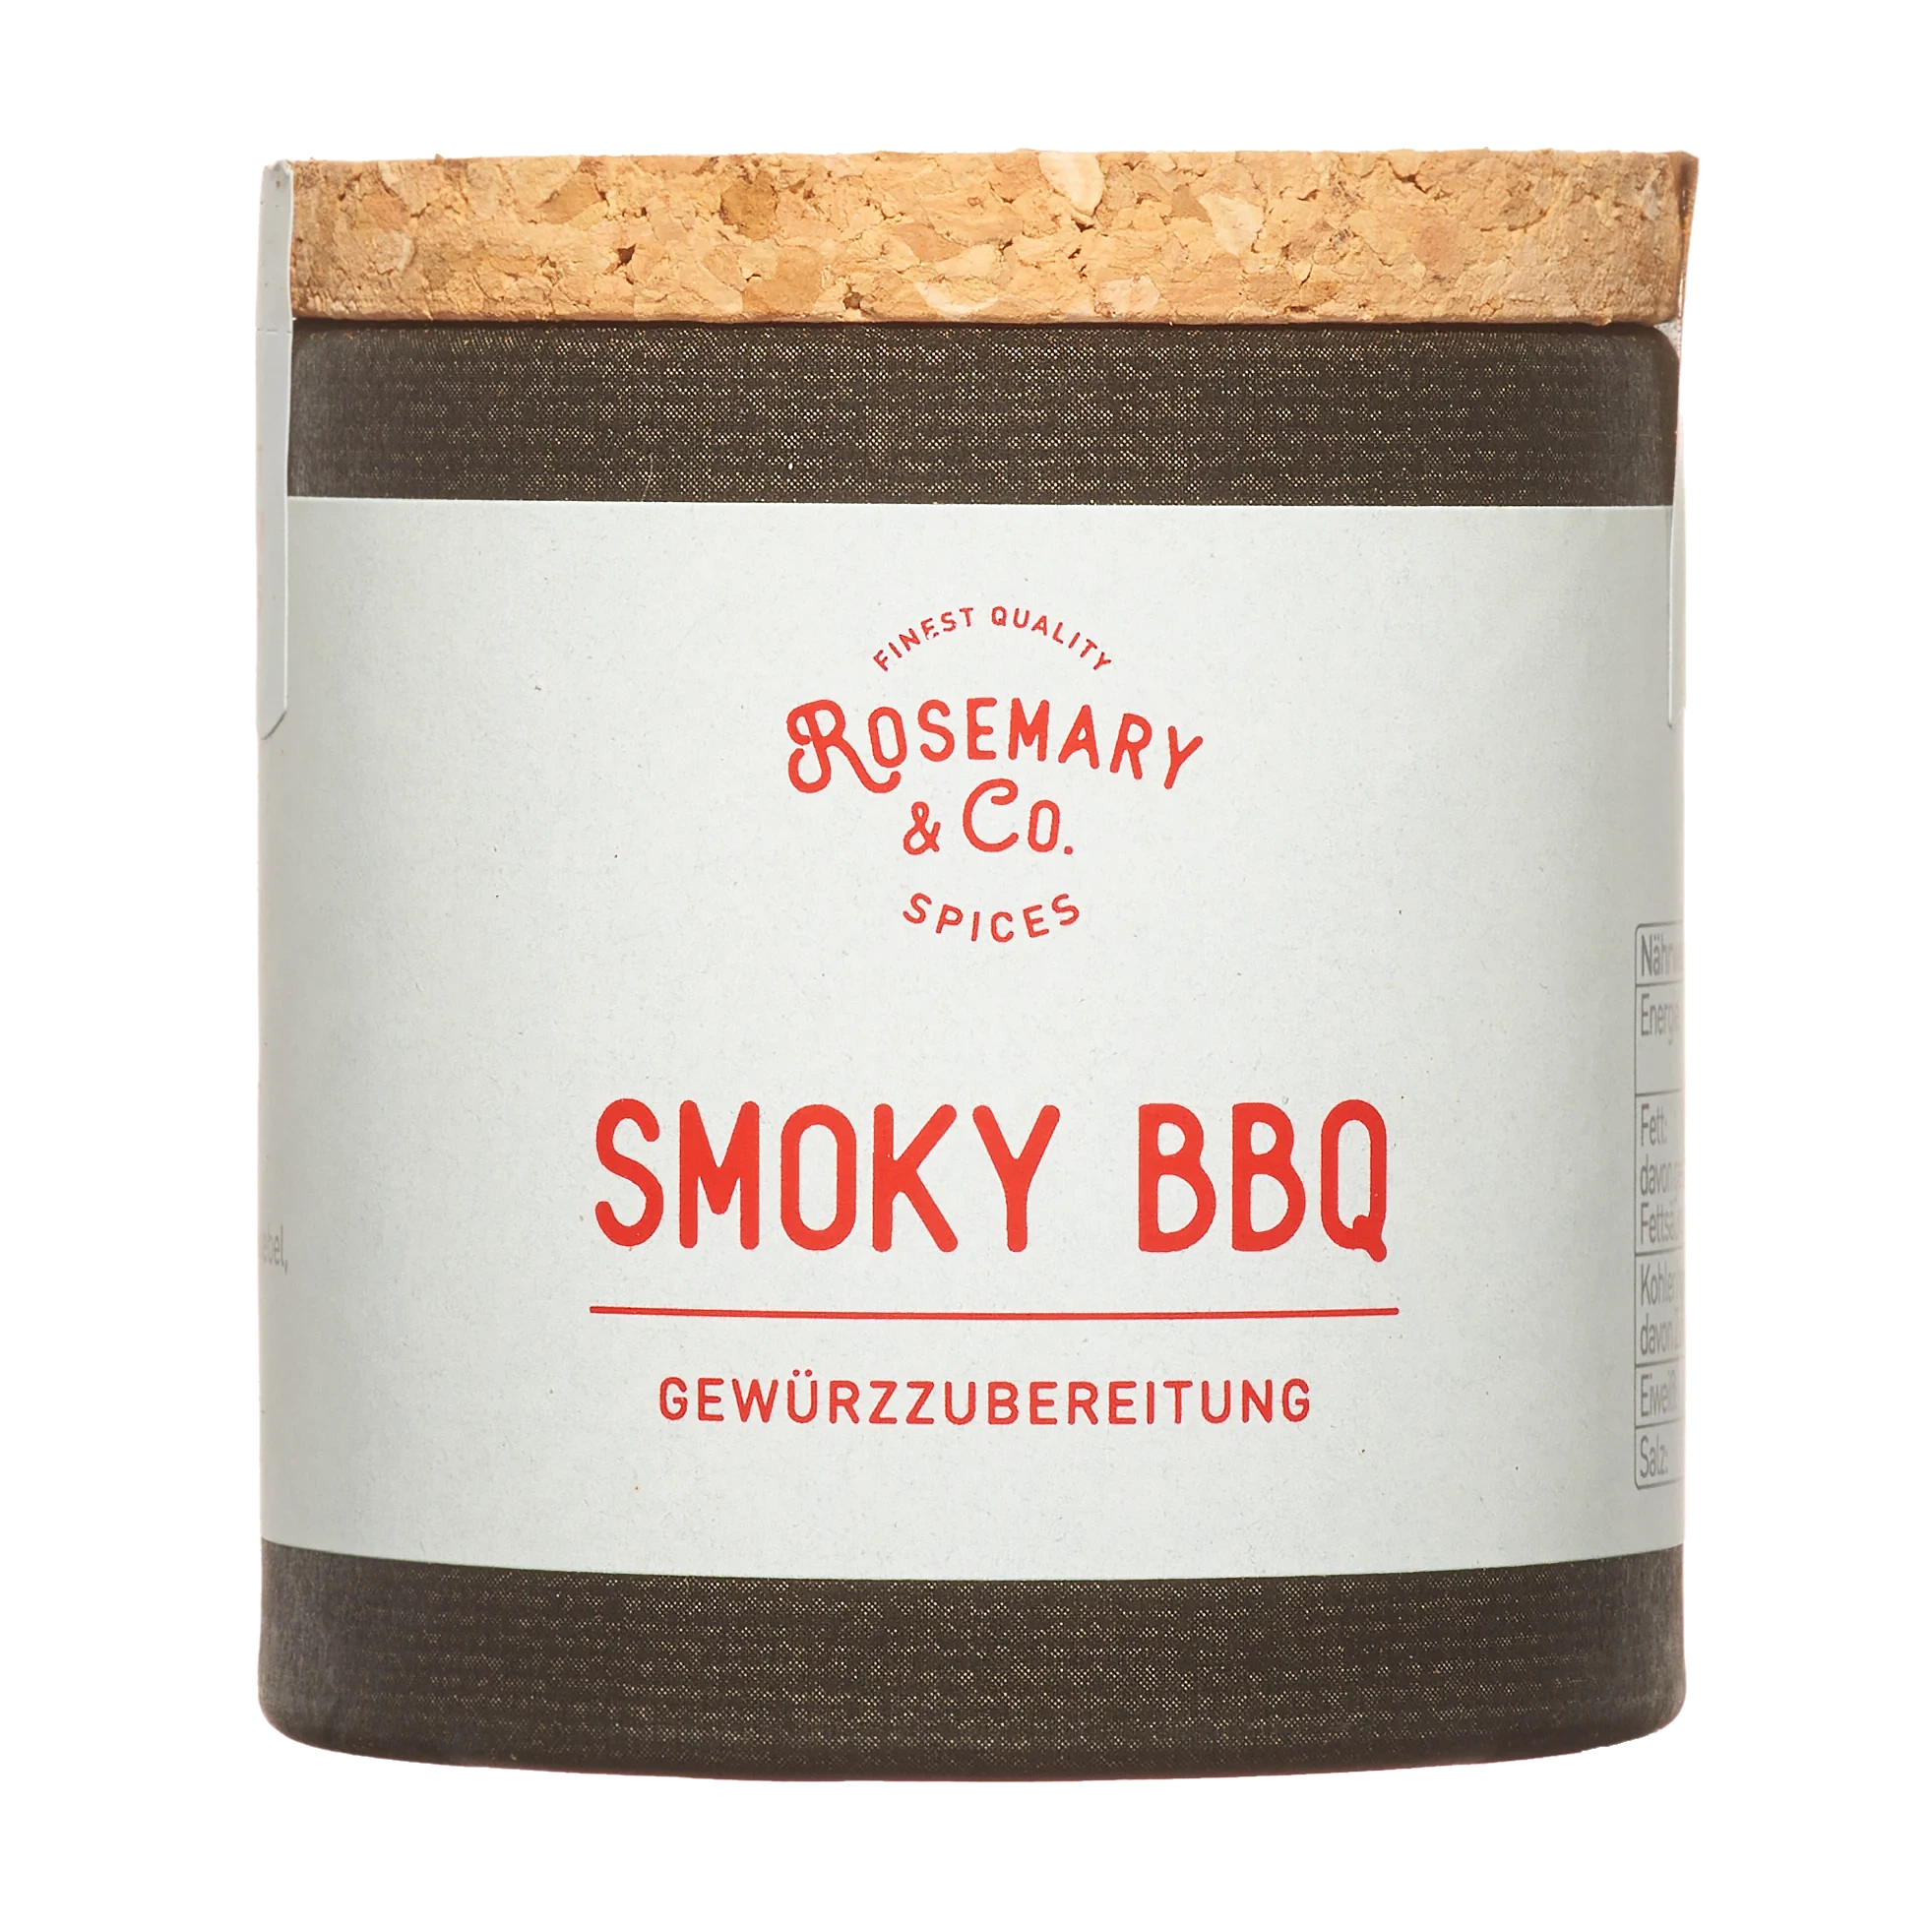 Rosemary & Co. Smoky BBQ